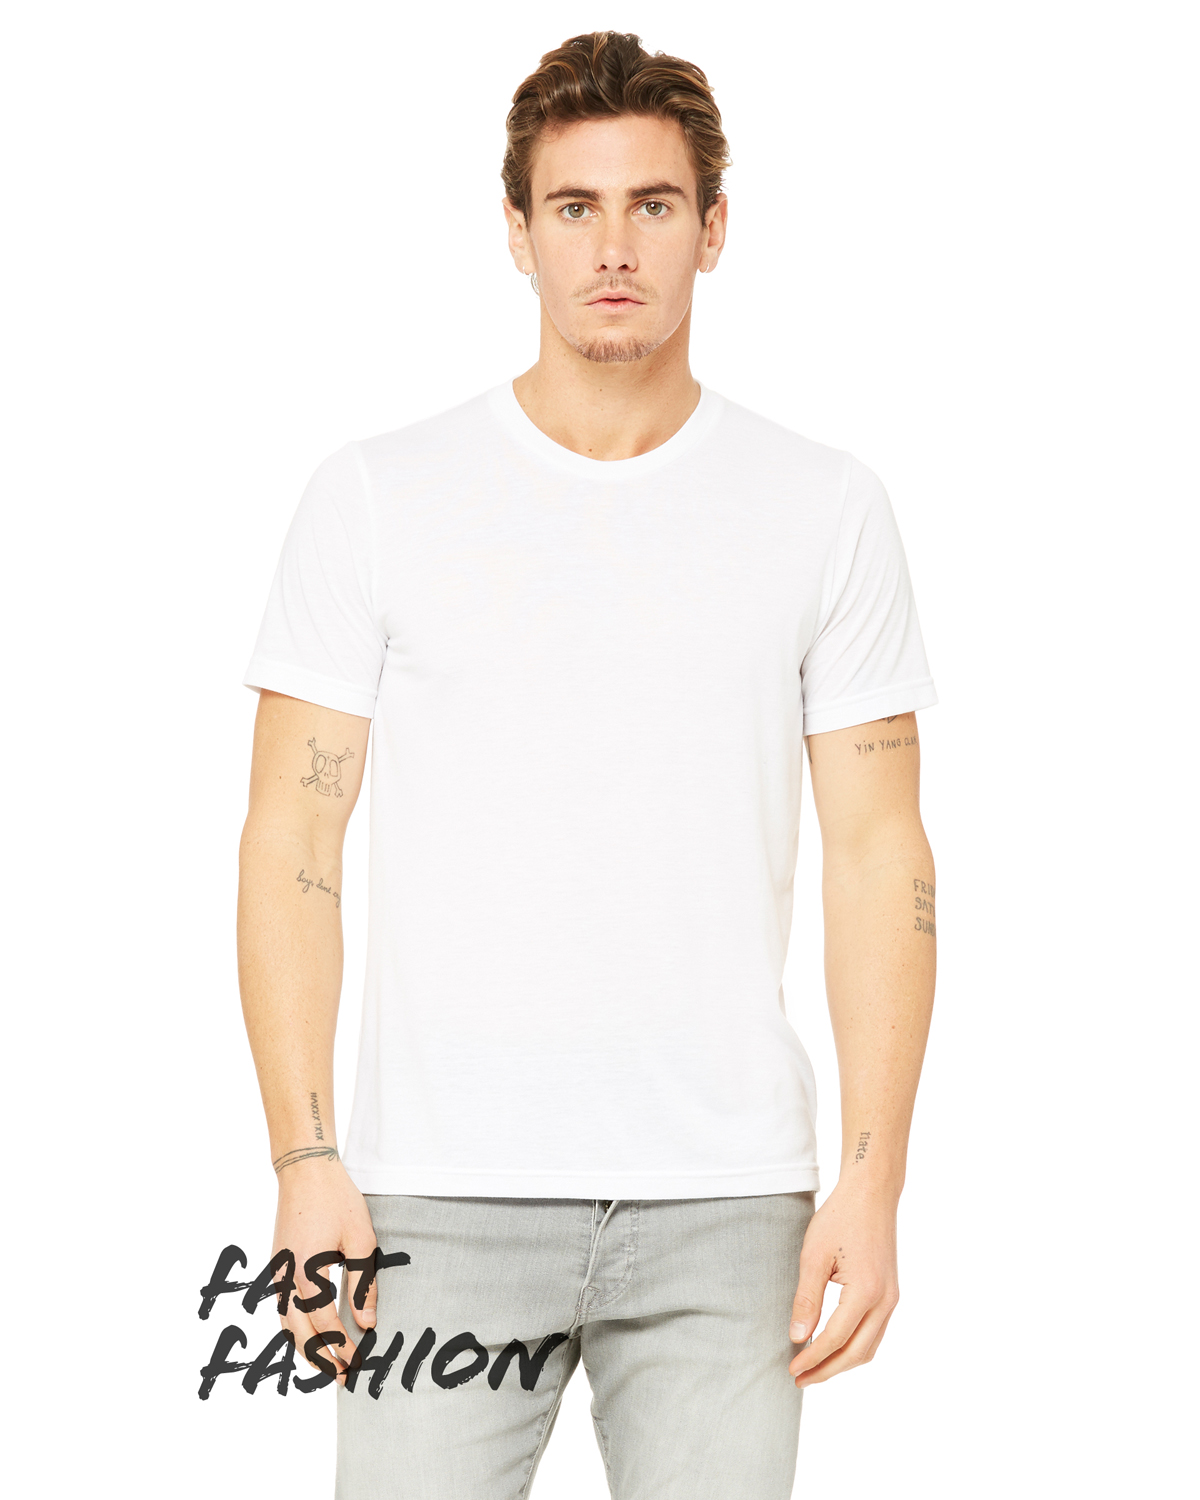 Fashion Viscose T 3880 Shirts | Jiffy Bella Shirt Unisex Canvas